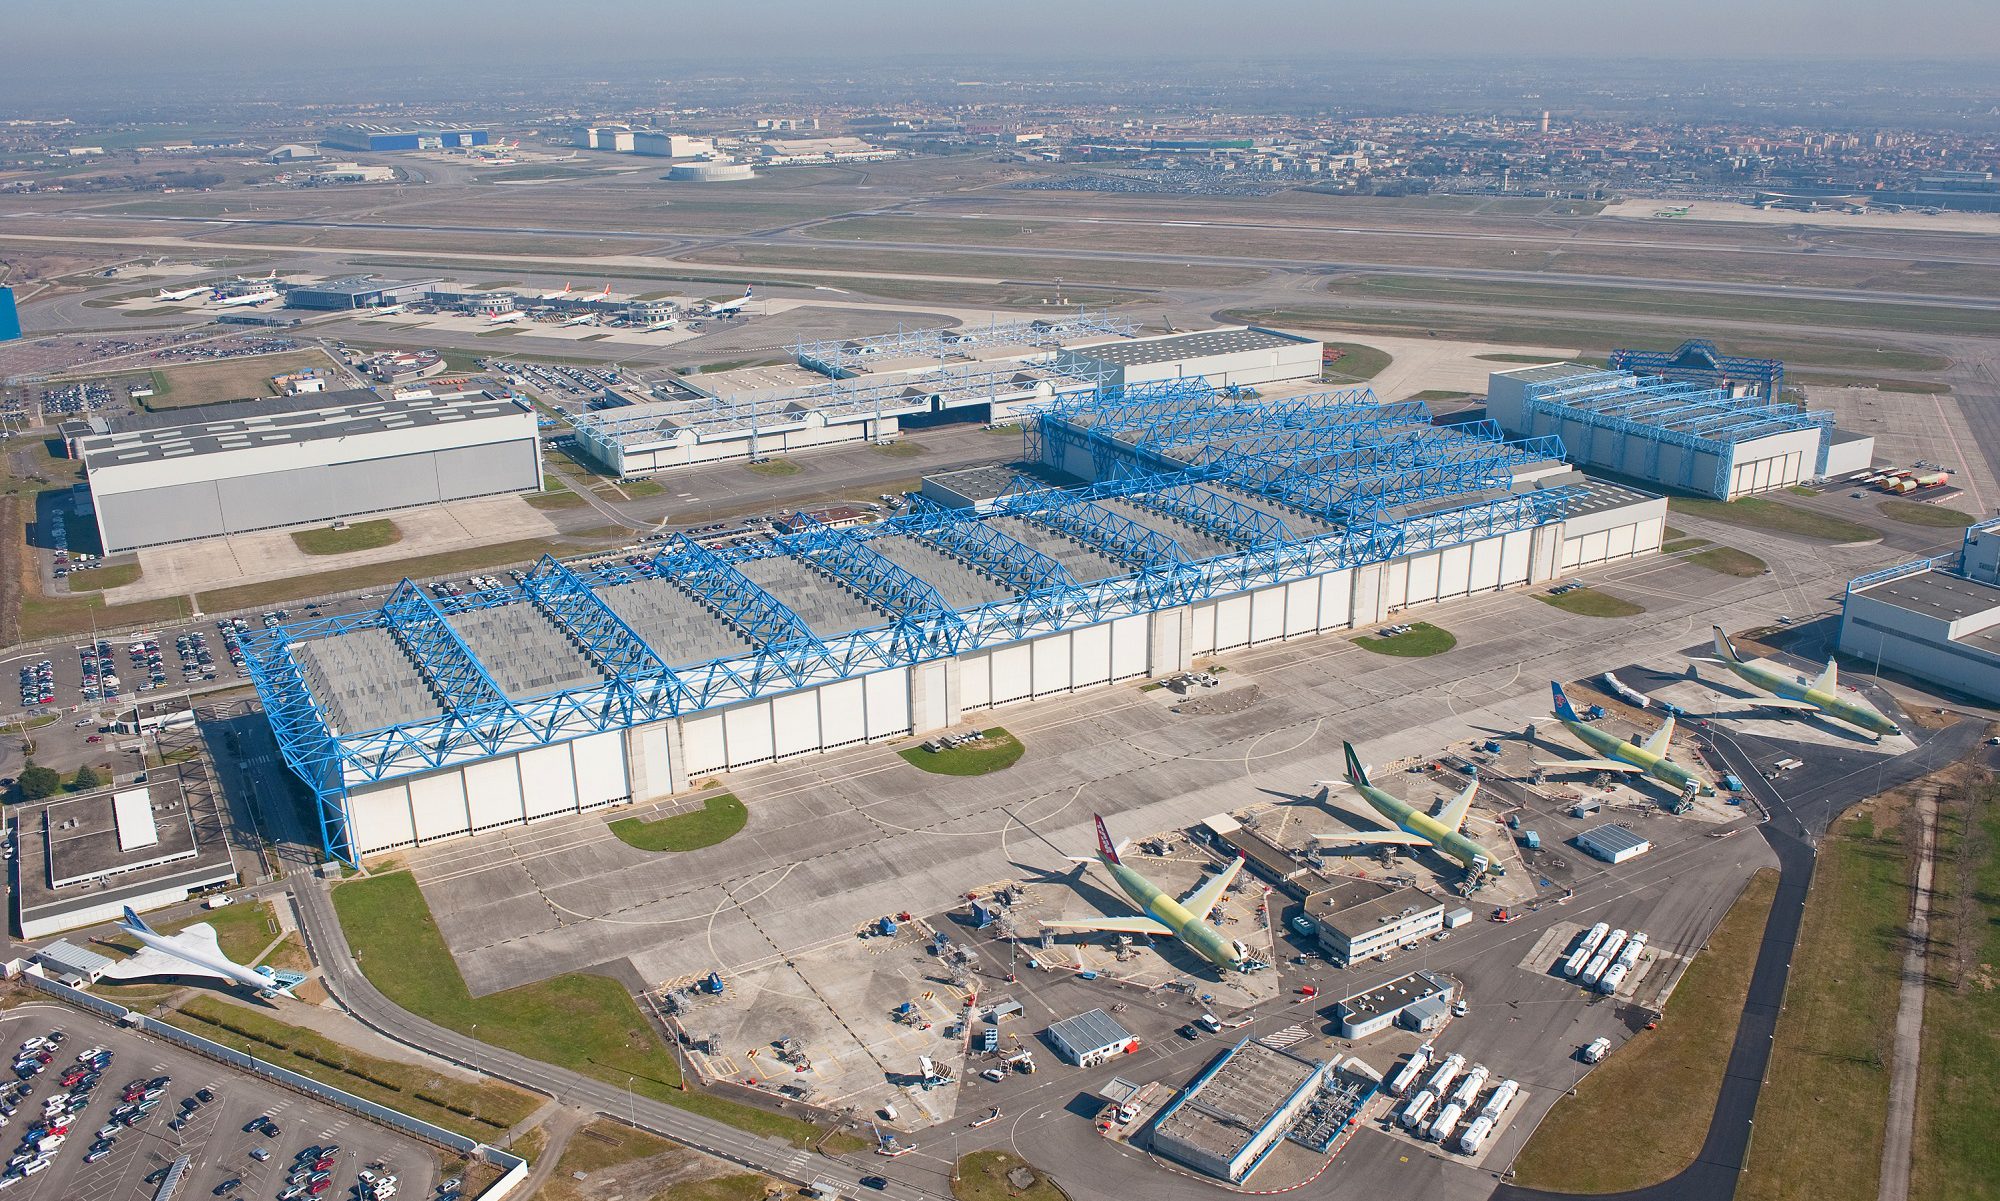 Resultado de imagen para Airbus factory aerial